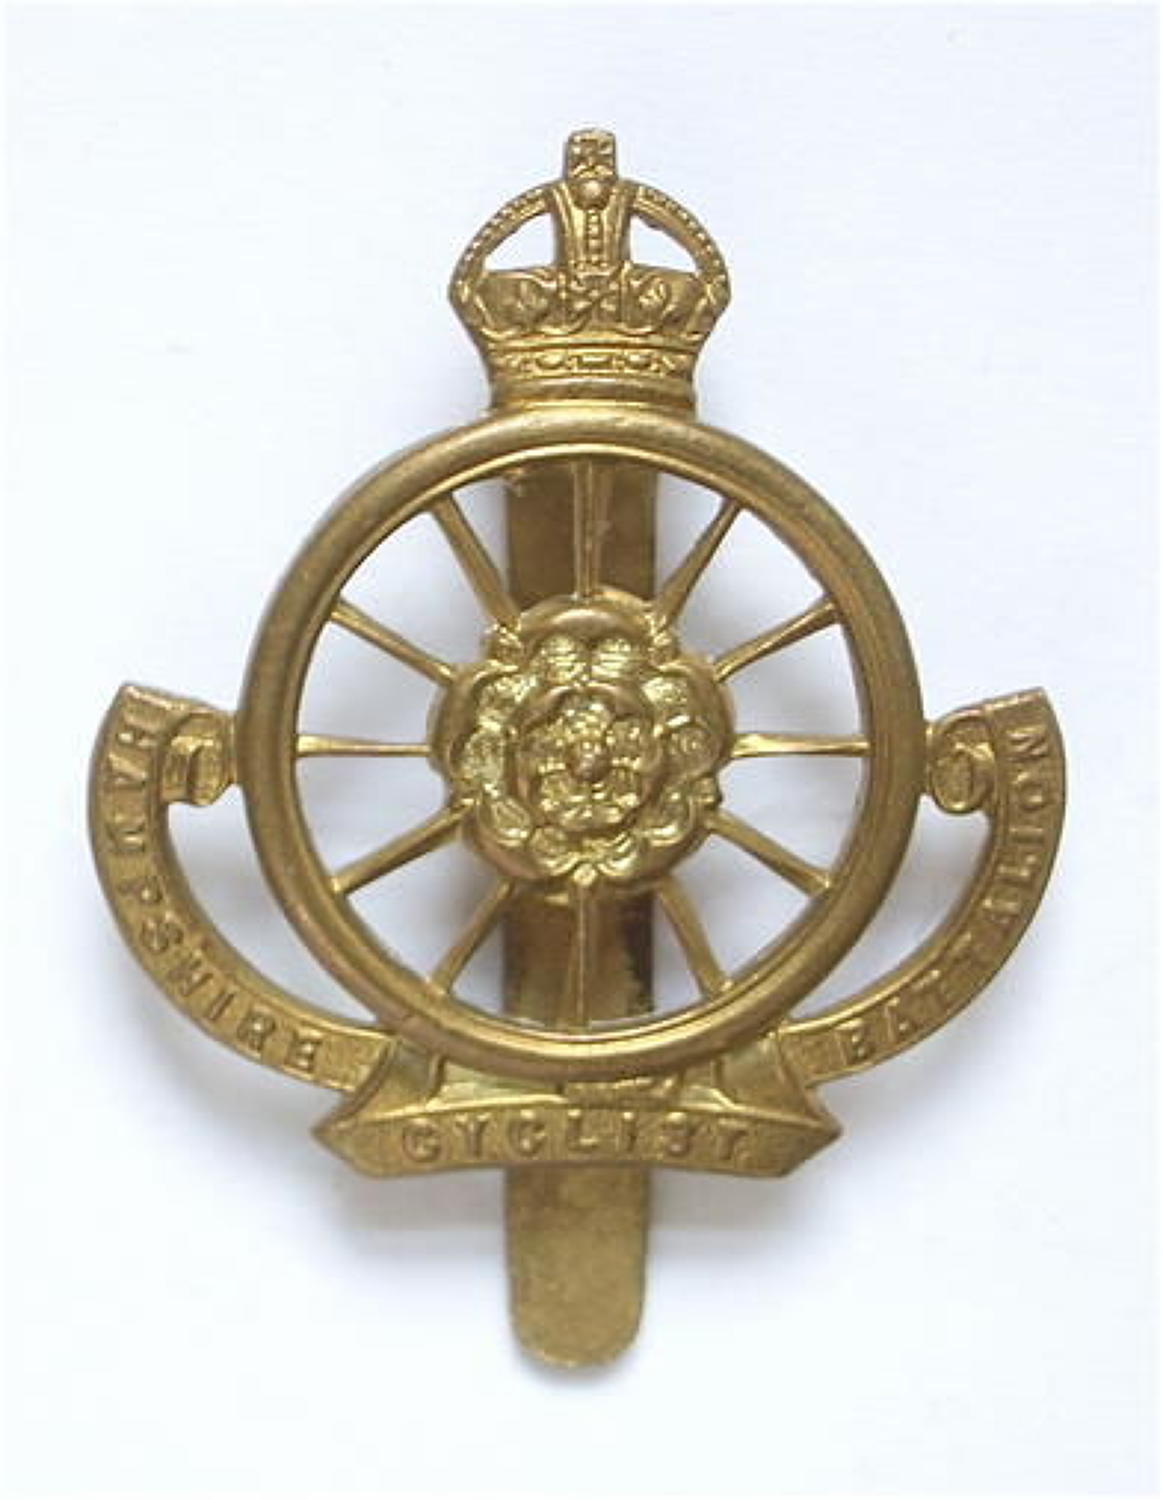 9th (Cyclist) Bn. Hampshire Regiment Ww1 OR’s cap badge circa 1911-2